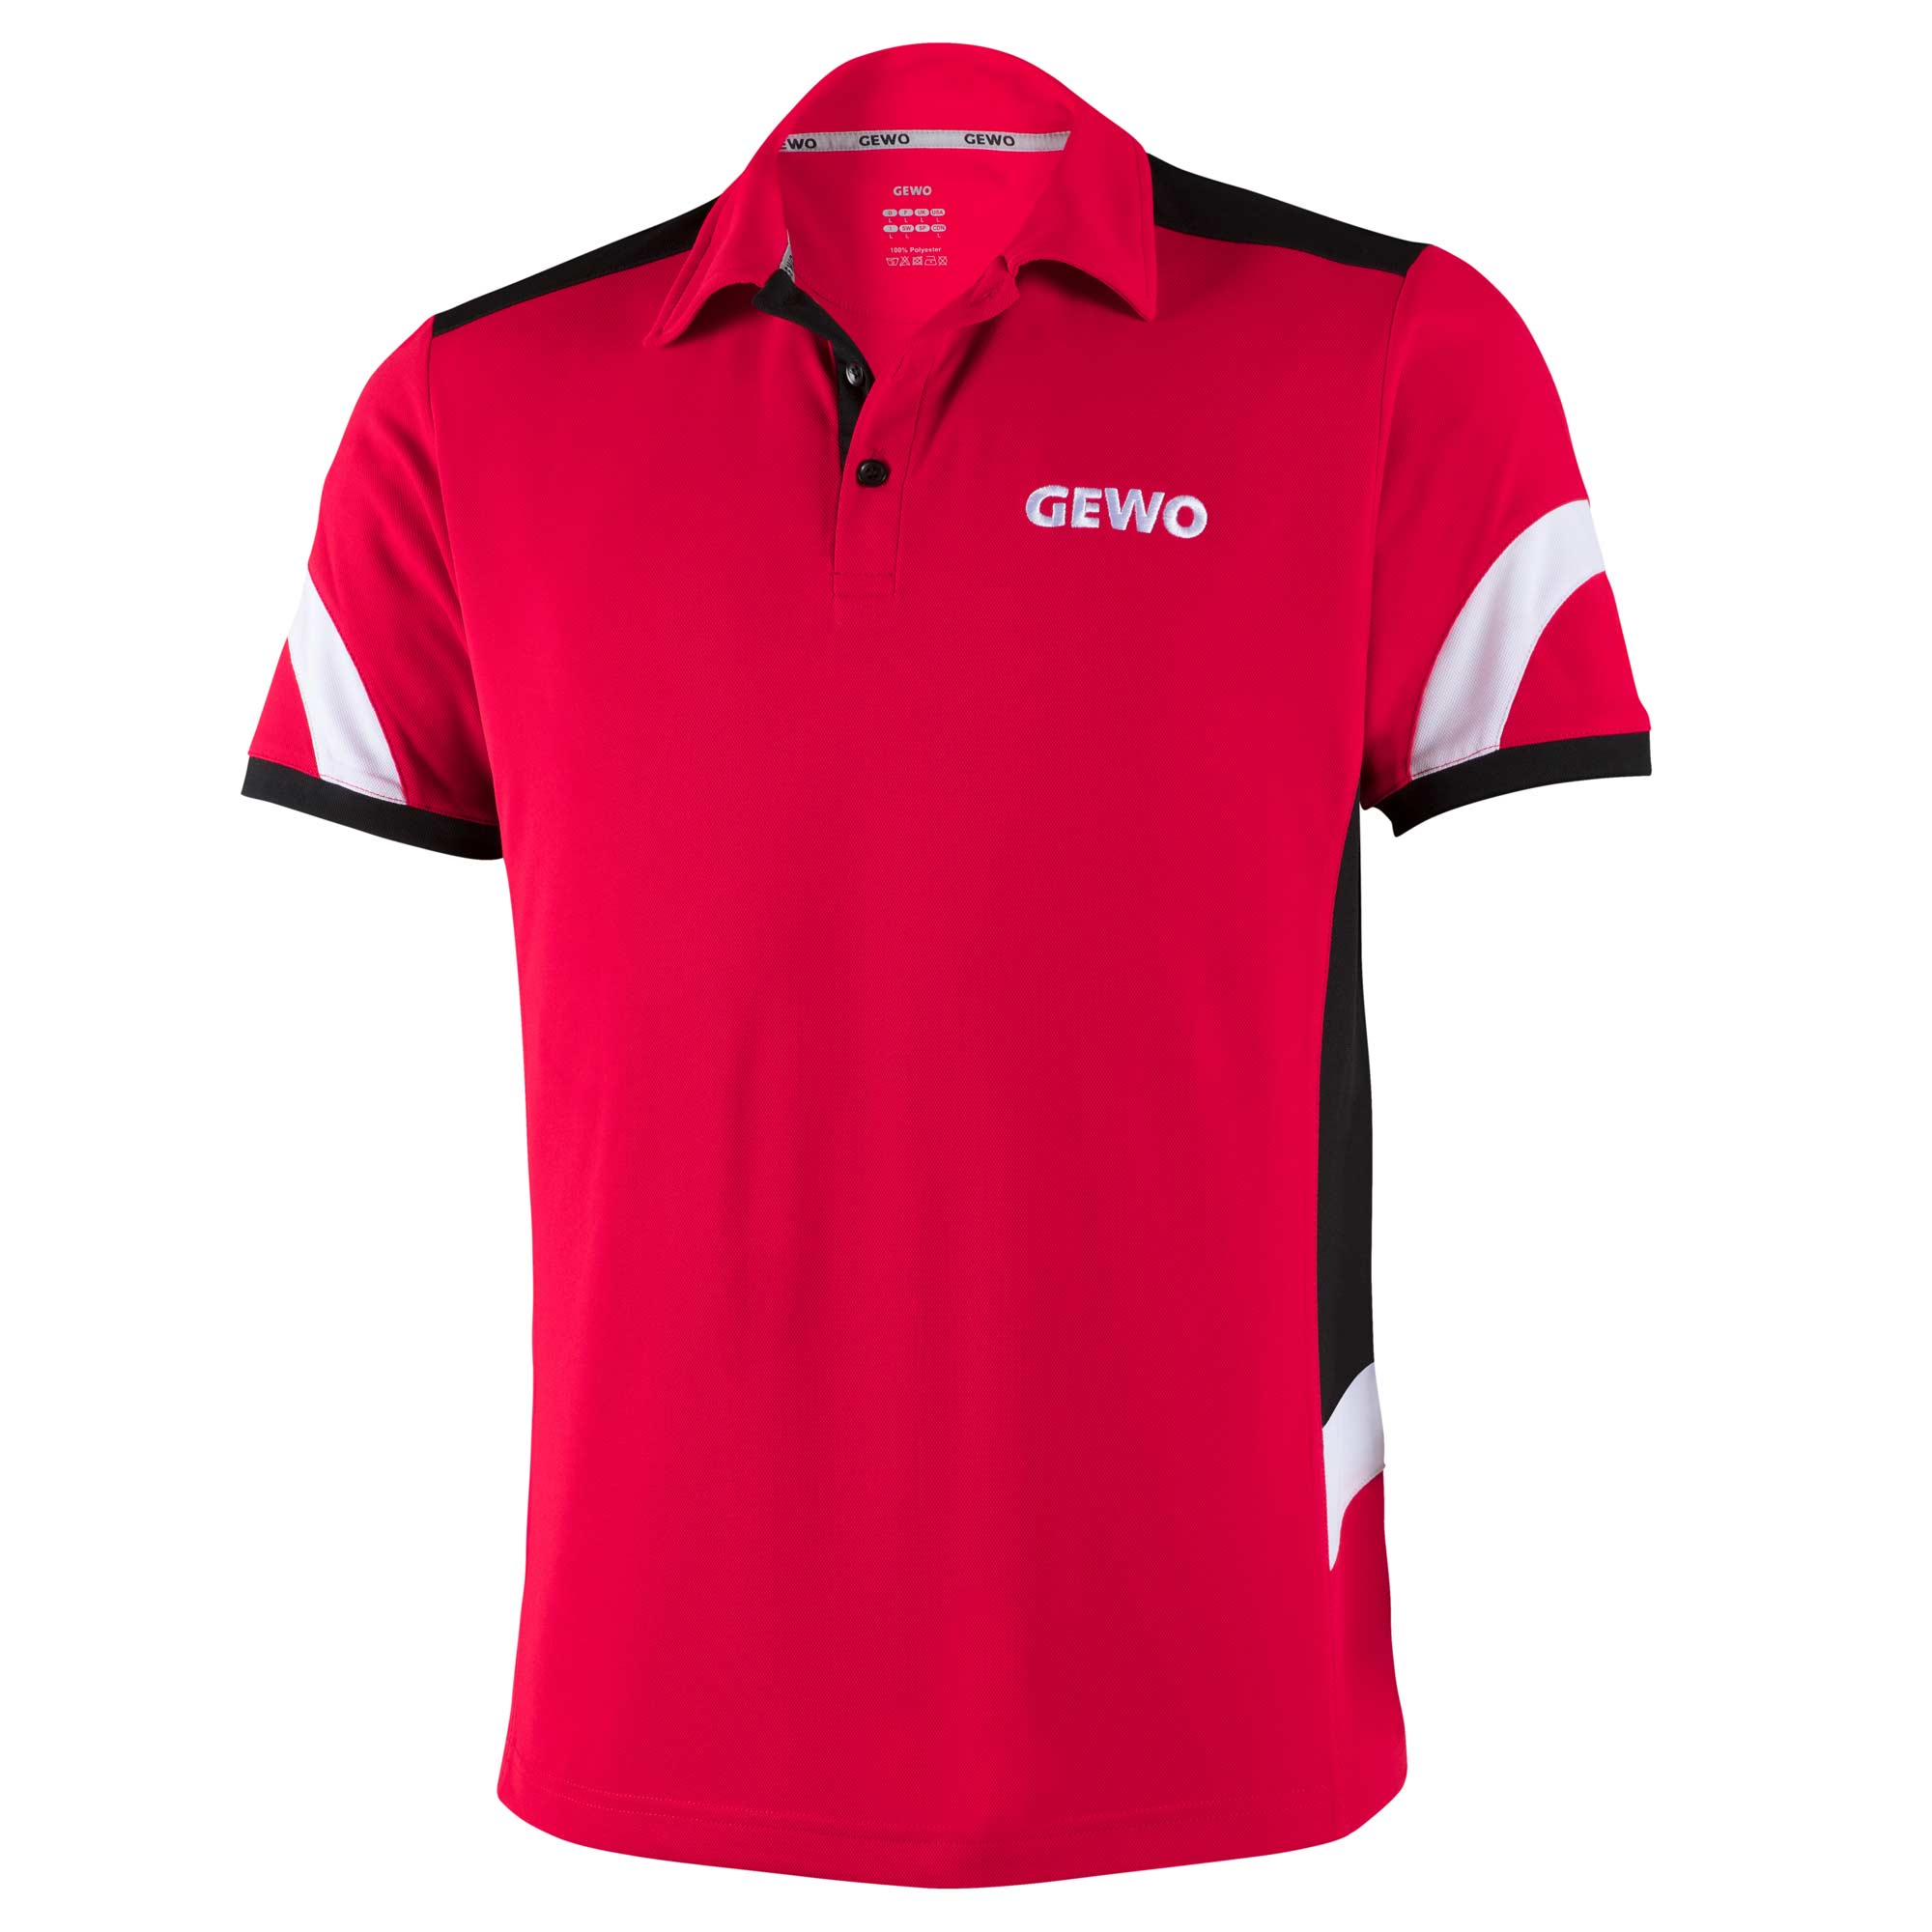 GEWO Shirt Trapani red/black S